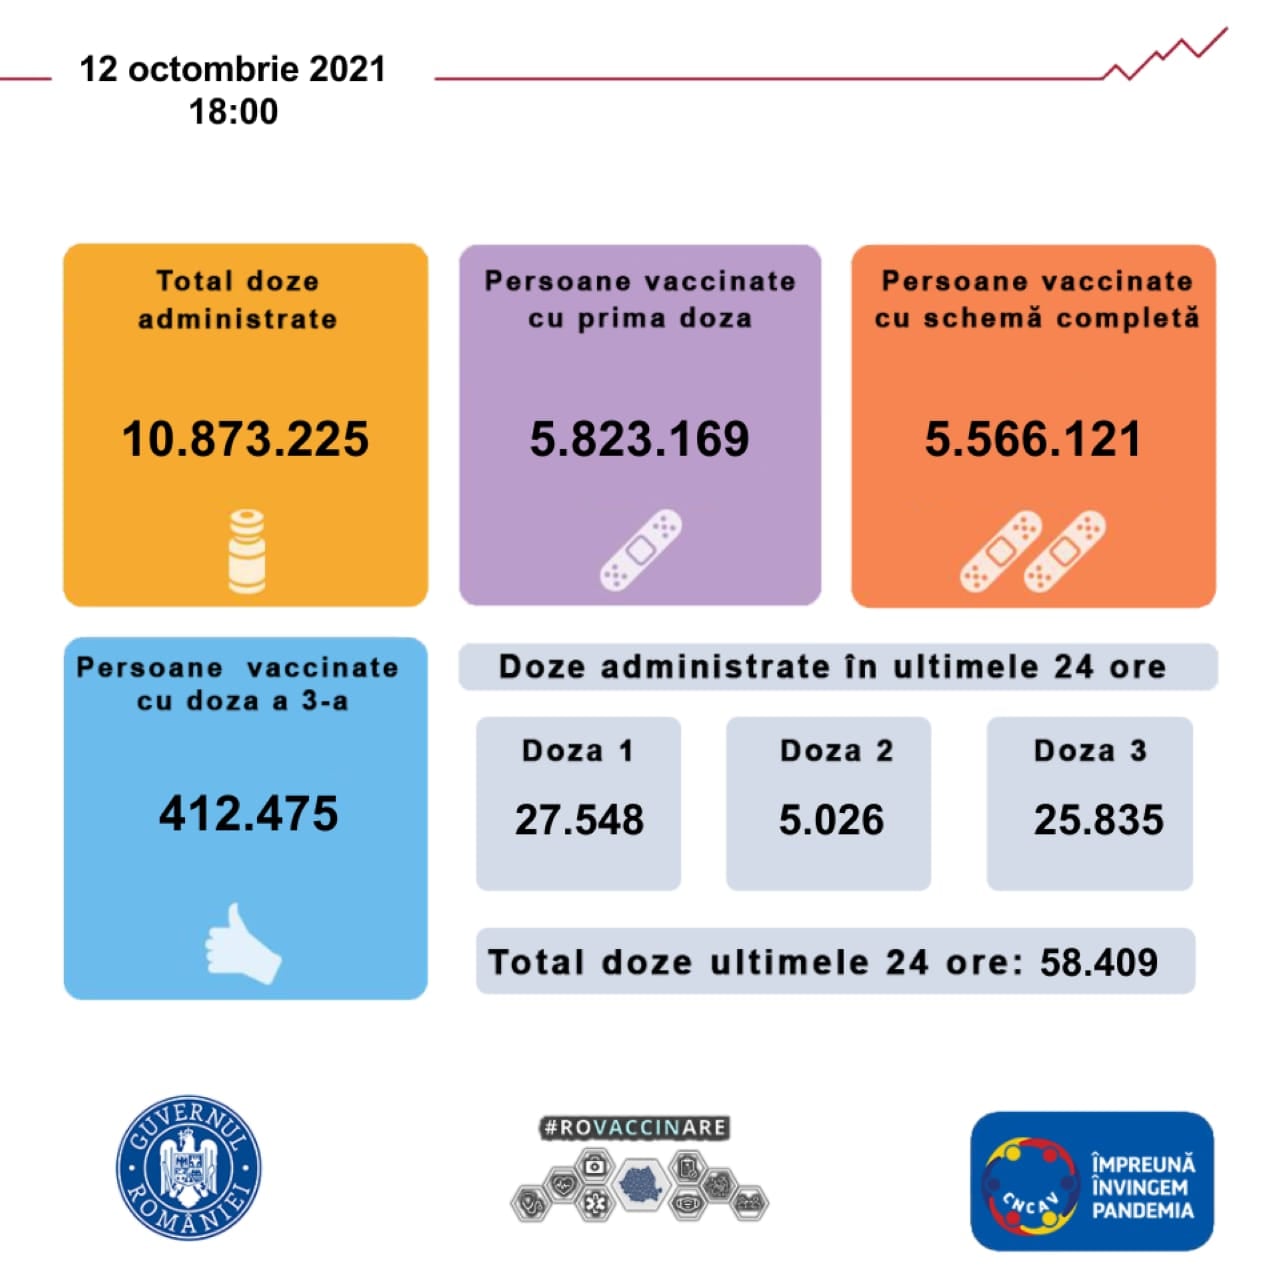 Rumæniens regering 5.8 millioner rumænere vaccineret indtil videre i landet